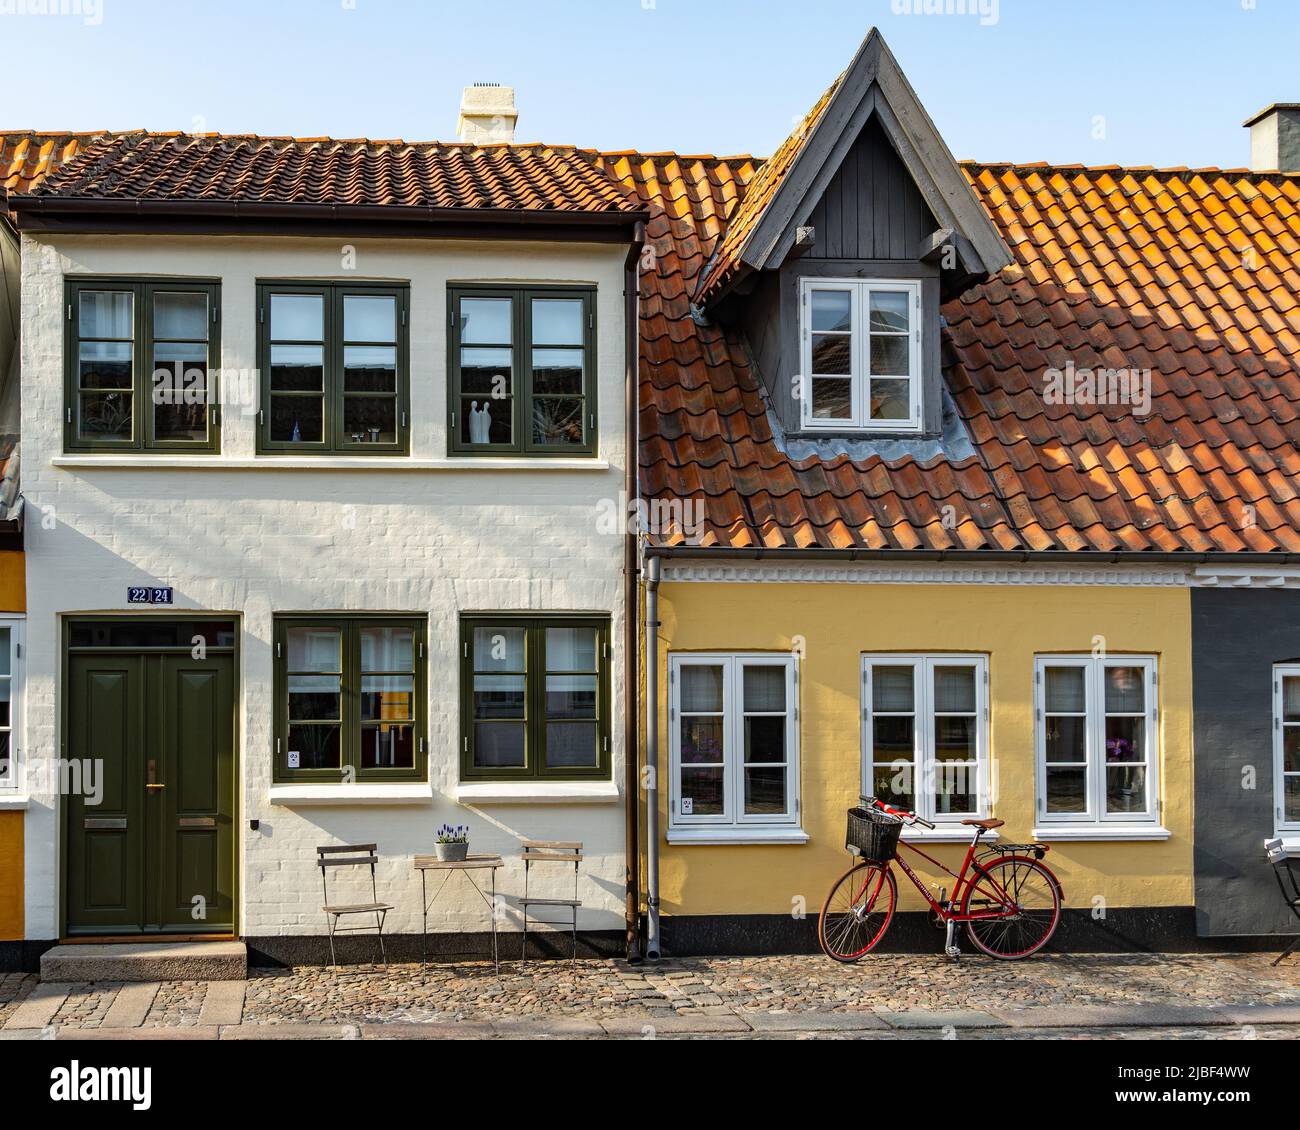 Typische dänische Wohnarchitektur. Dachgauben ermöglichen es Ihnen, den Raum unter dem Dach mit Fenstern zu nutzen, die das Licht einfangen.Odense, Dänemark Stockfoto